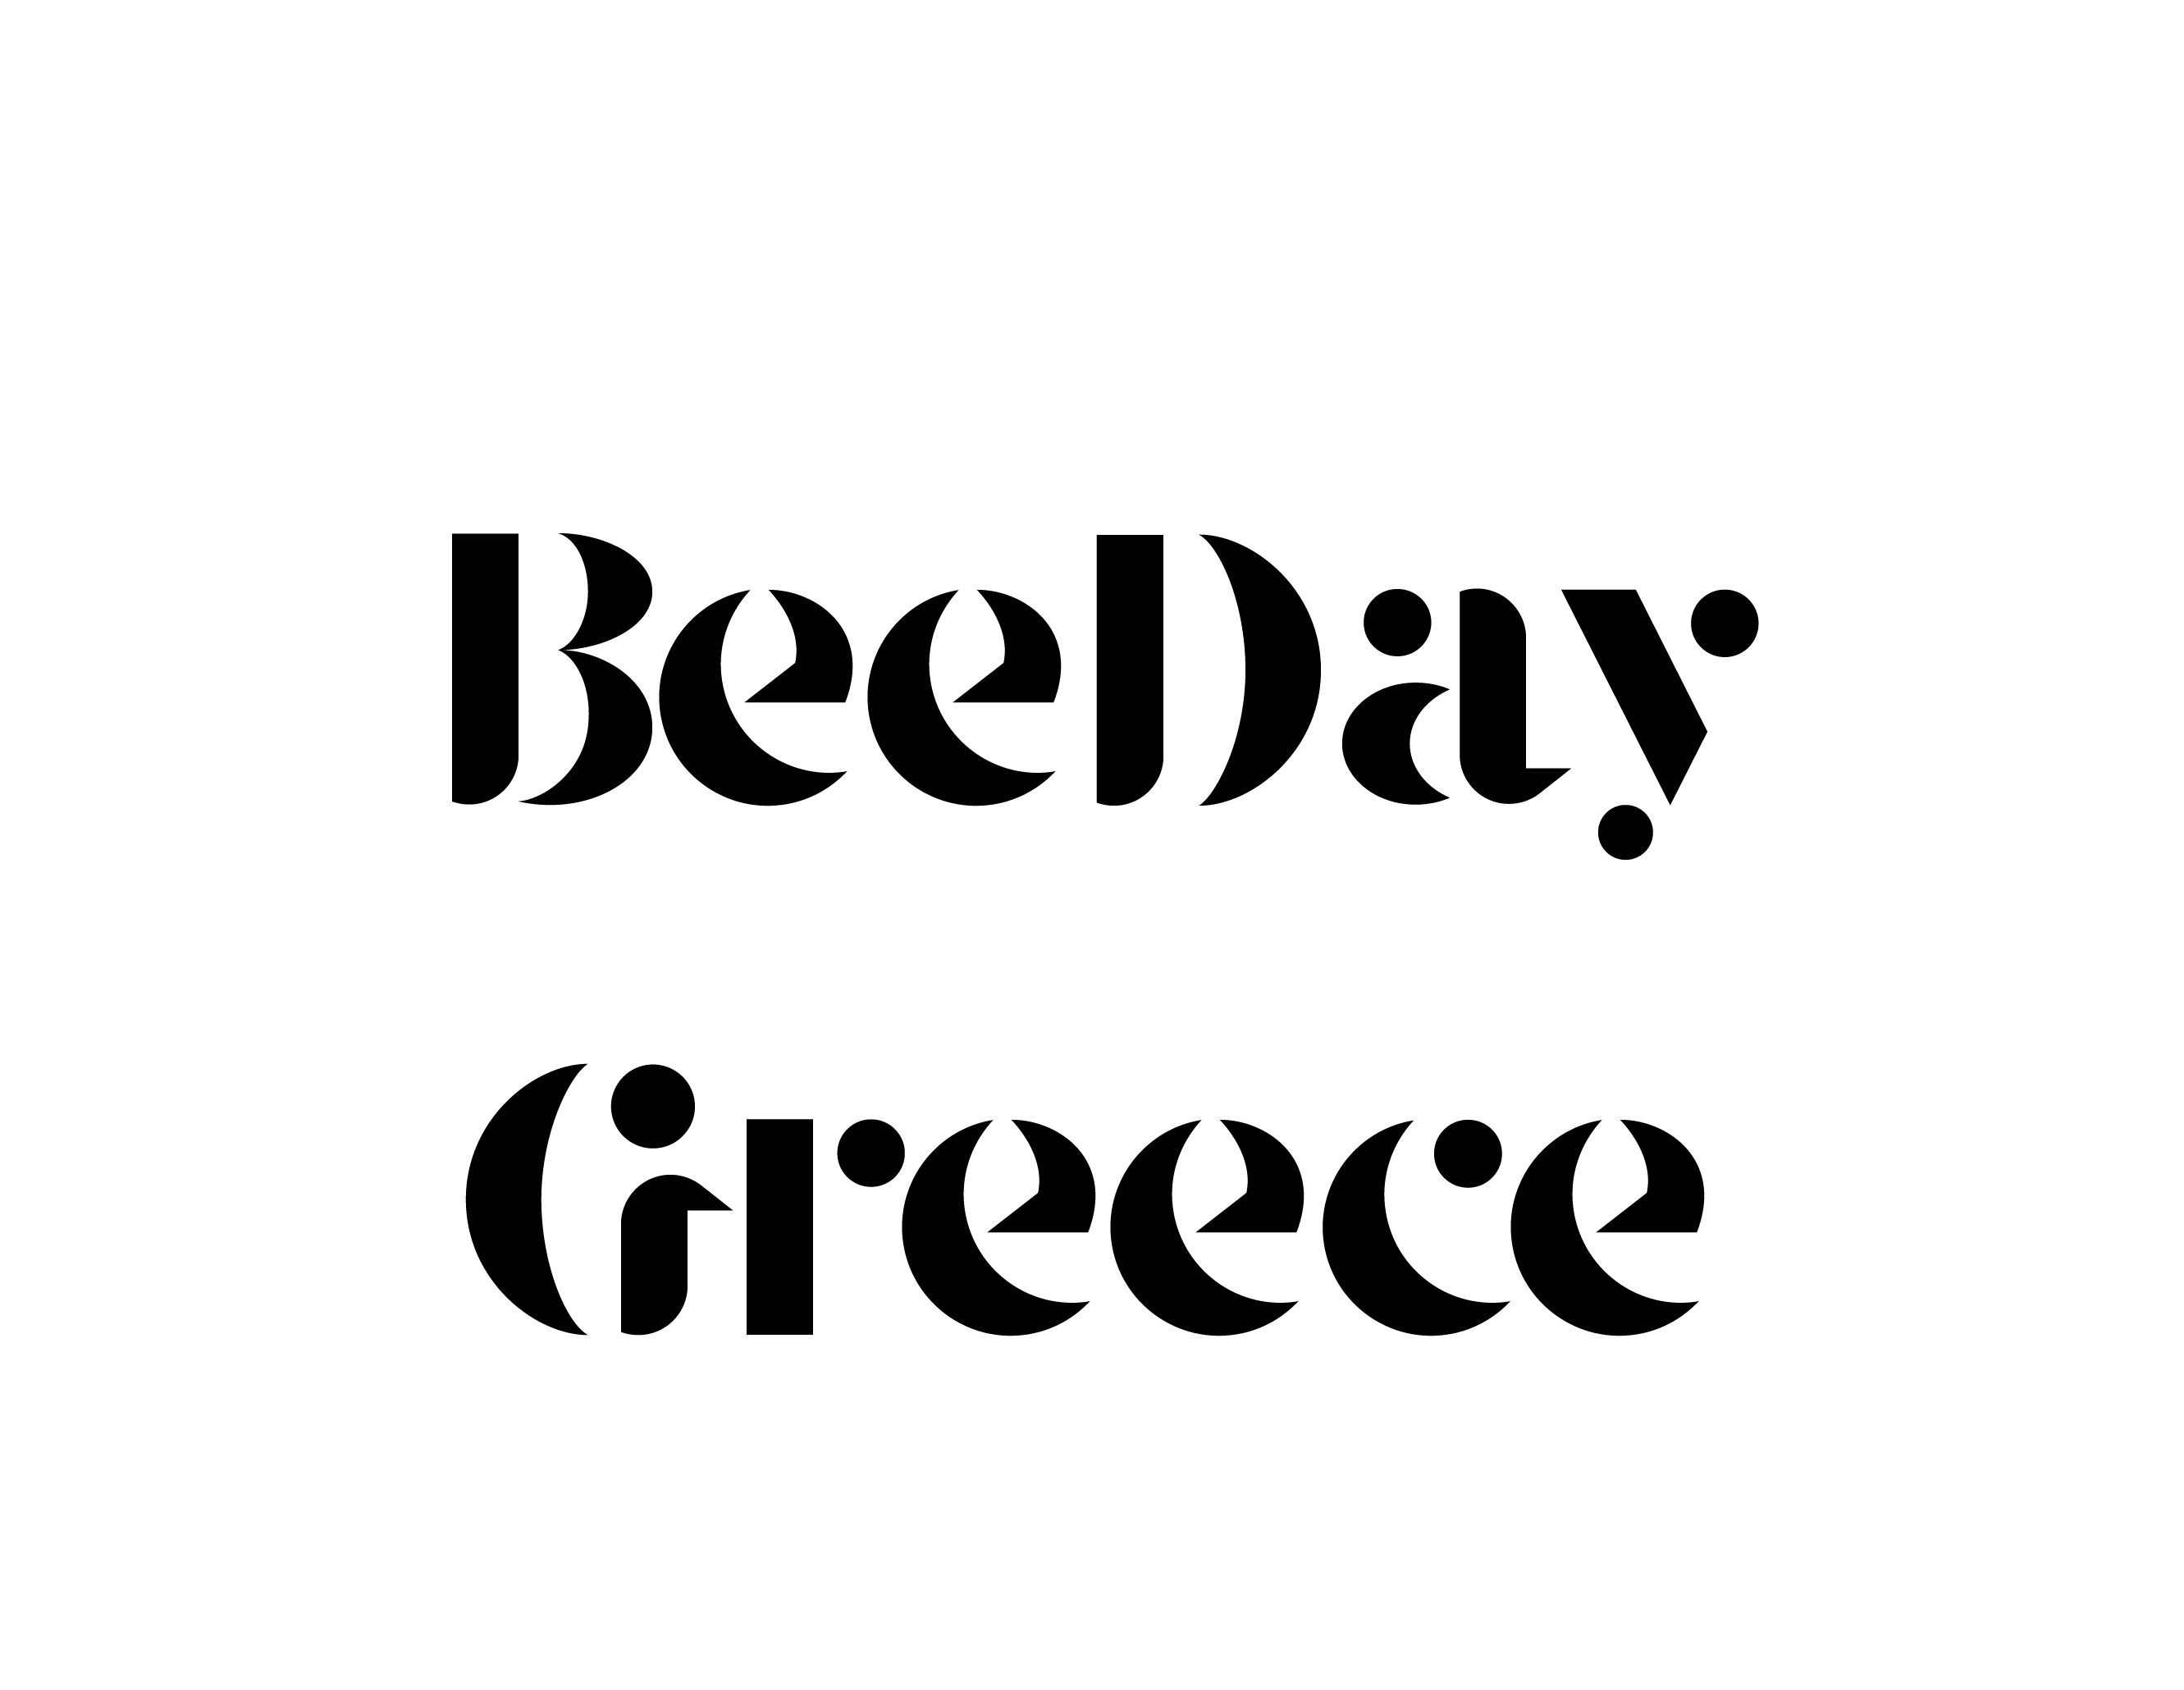 Bee Day Greece